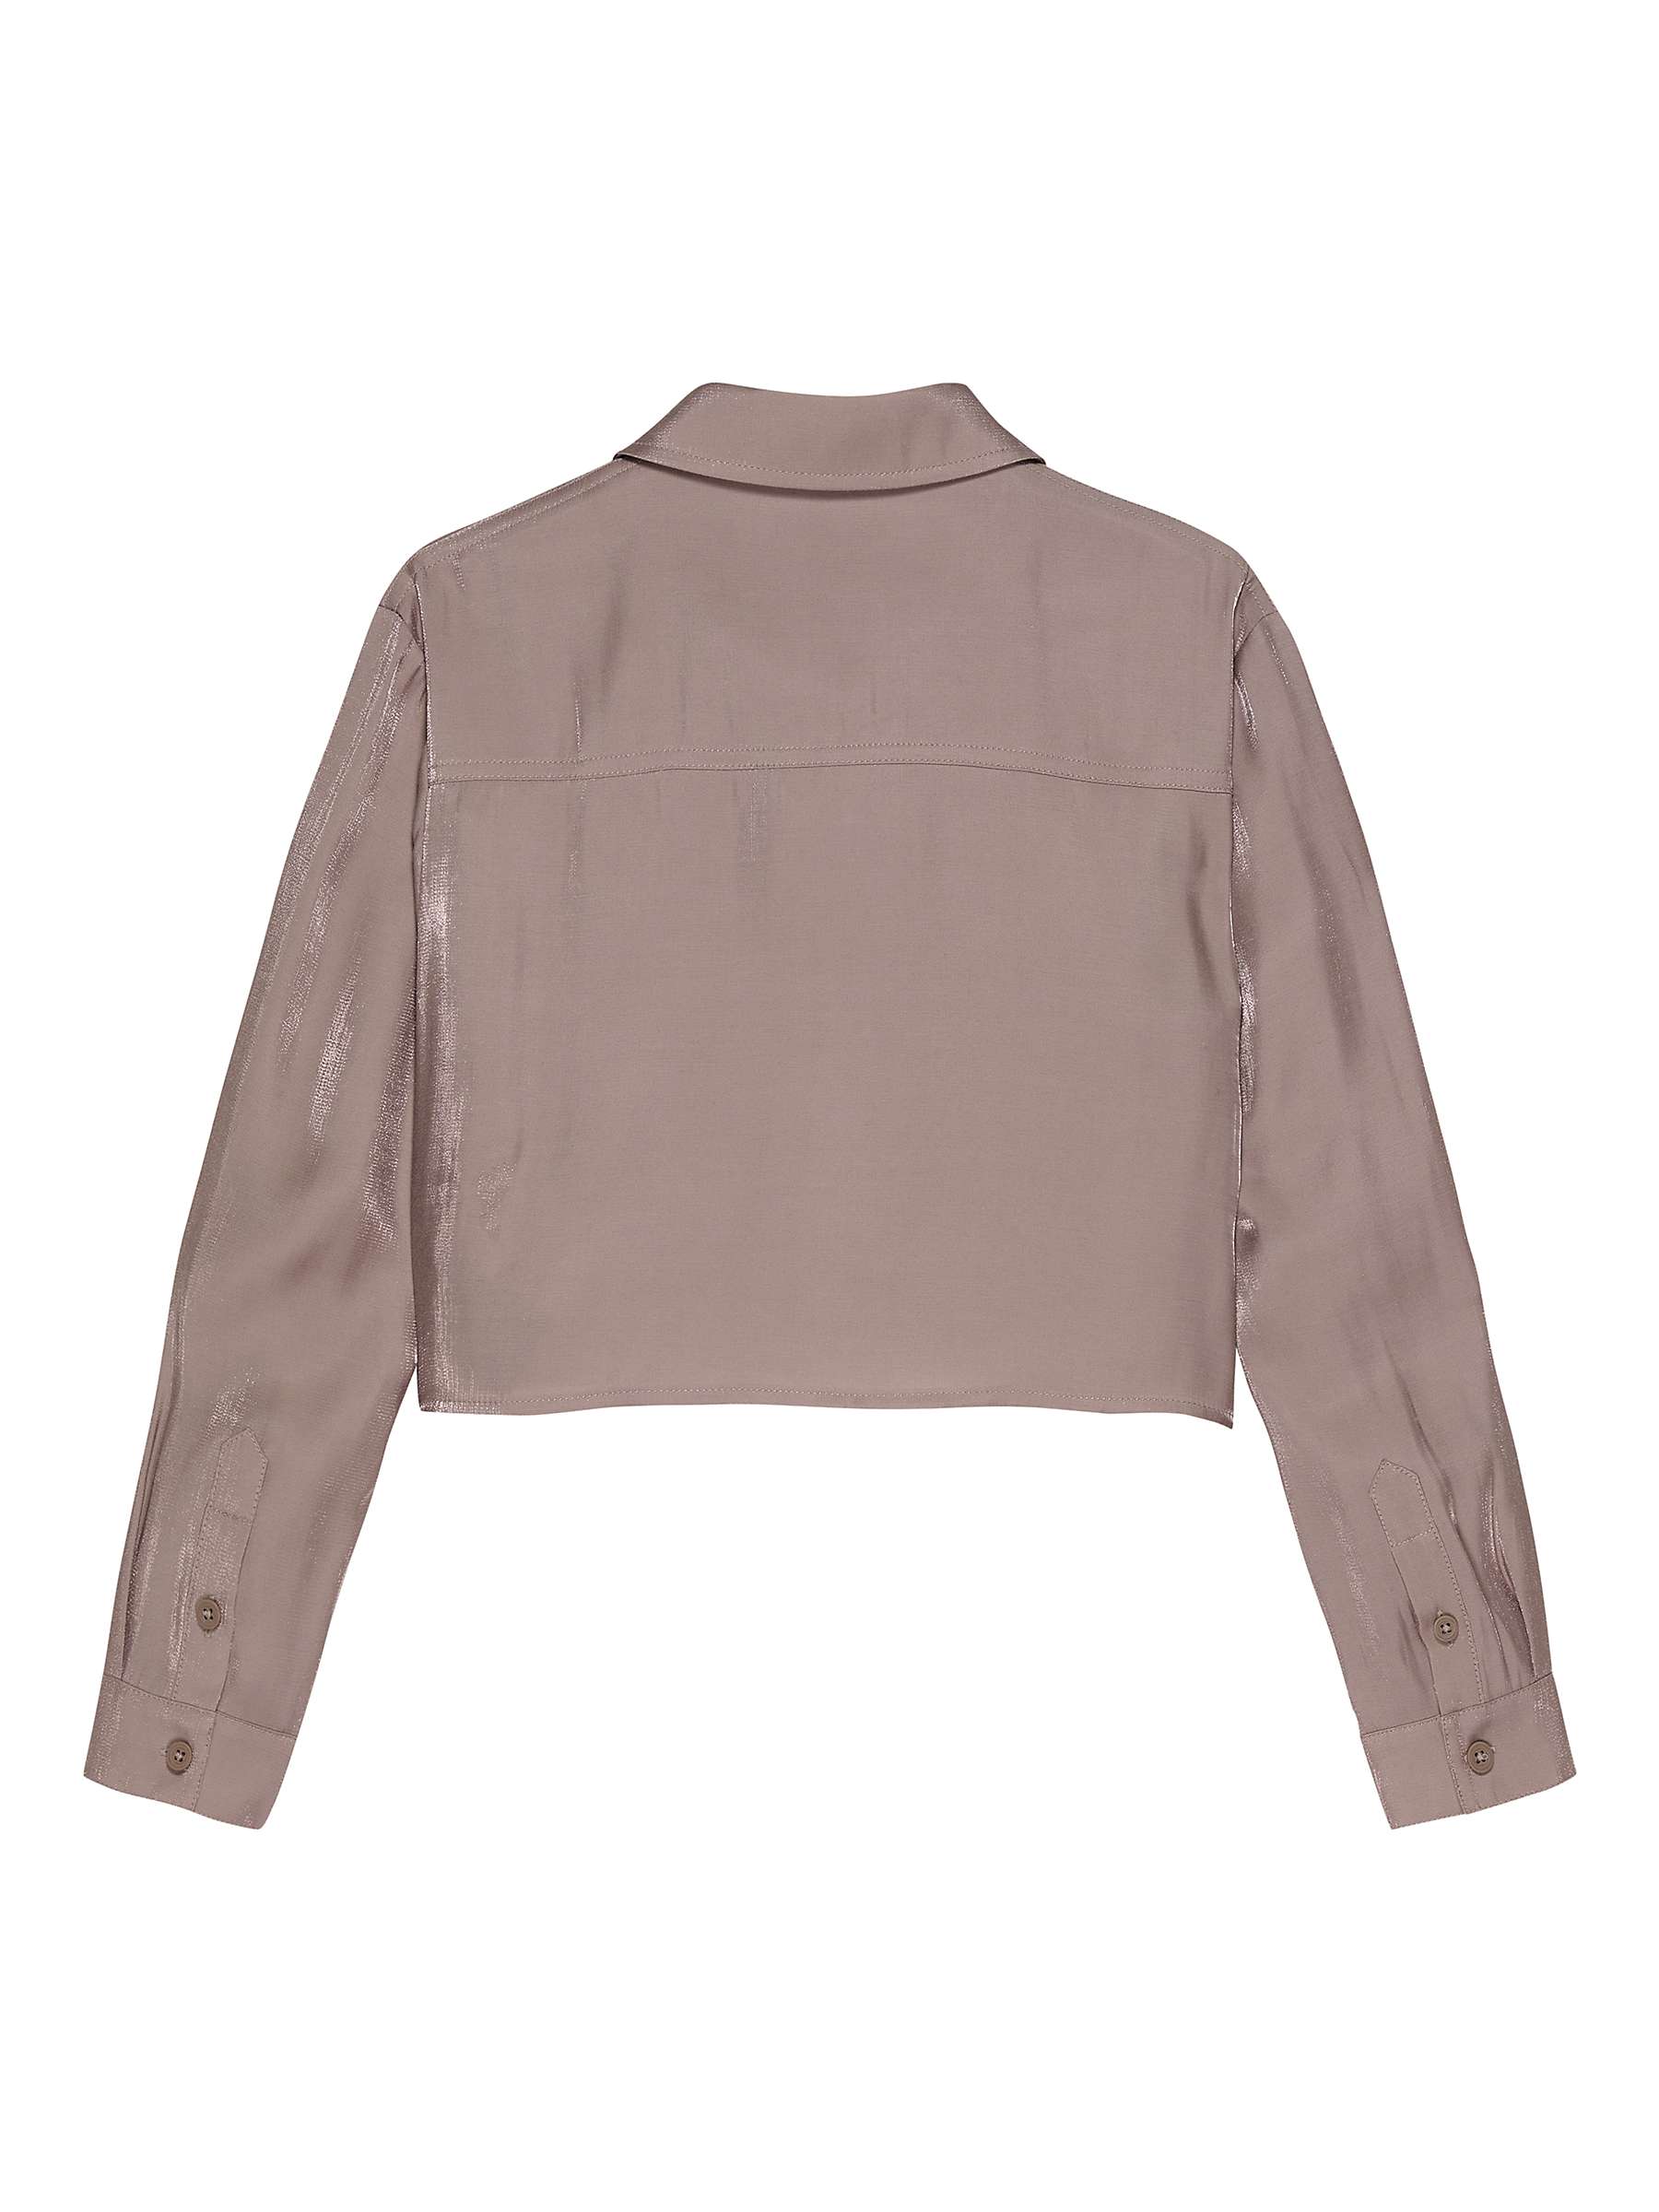 Buy Calvin Klein Kids' Metallic Shine Cropped Shirt, Dark Blush Online at johnlewis.com